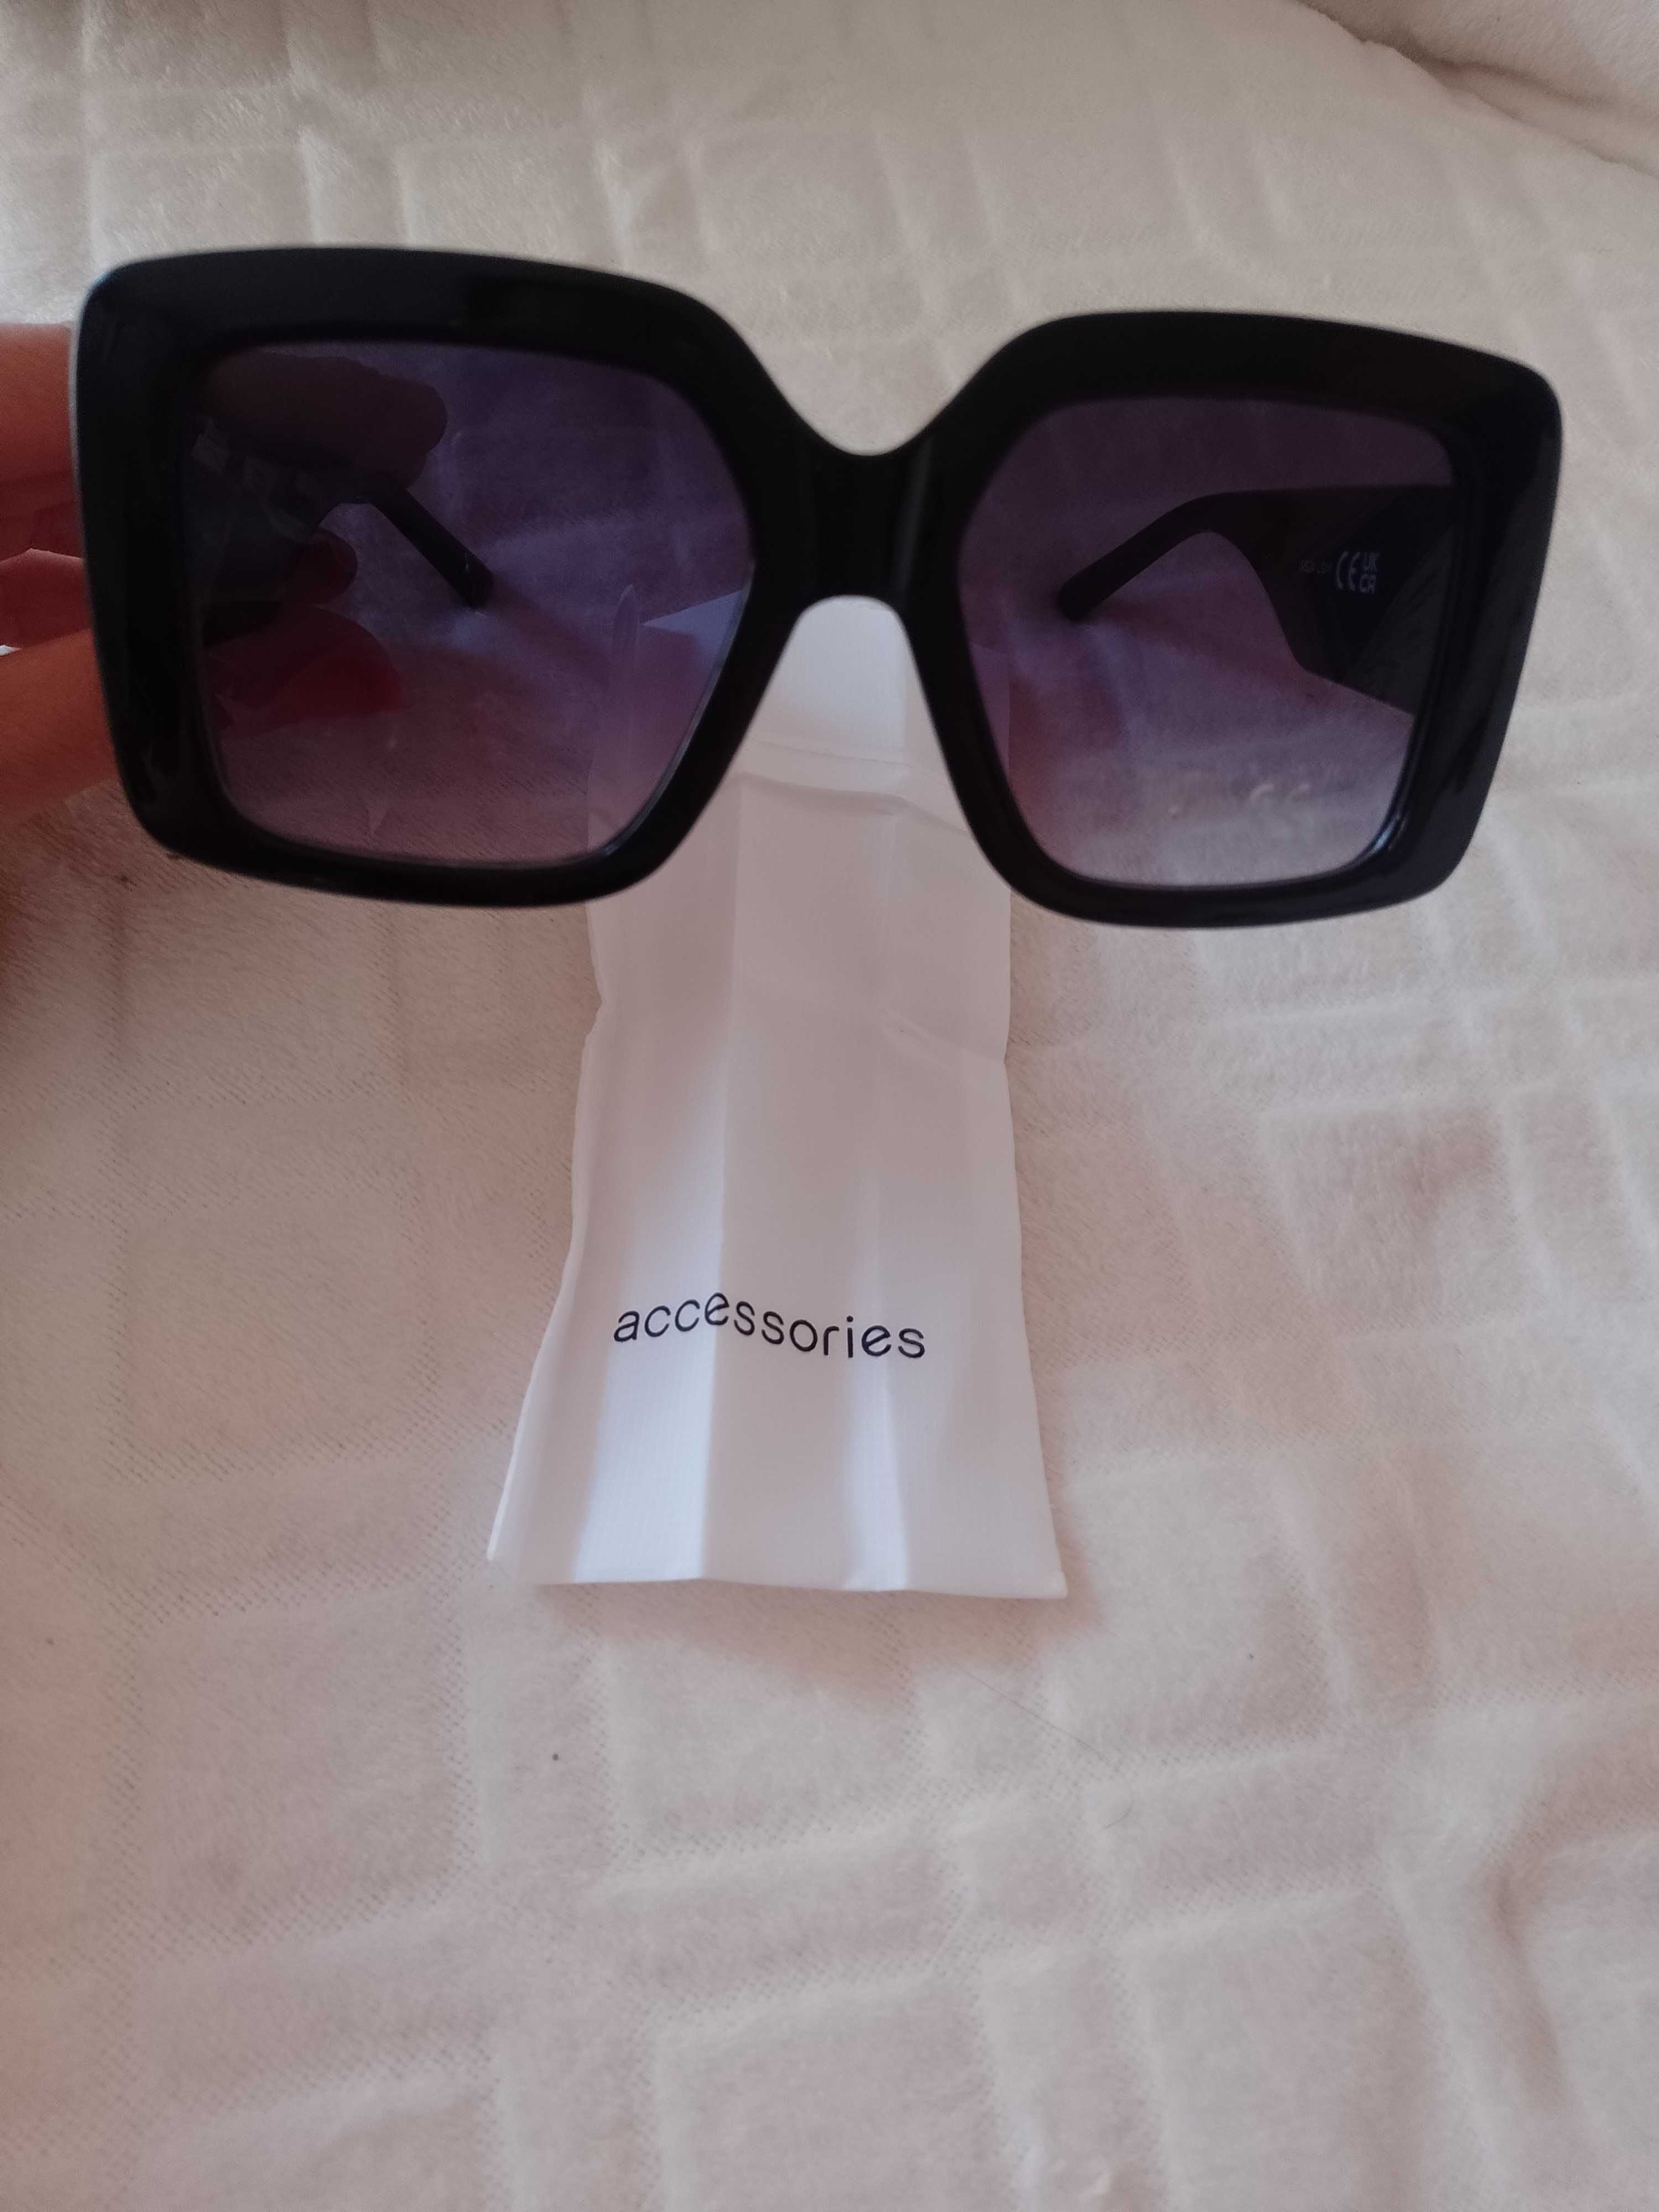 Accessories/Duże, czarne okulary przeciwsłoneczne w Etui, Muchy, NOWE